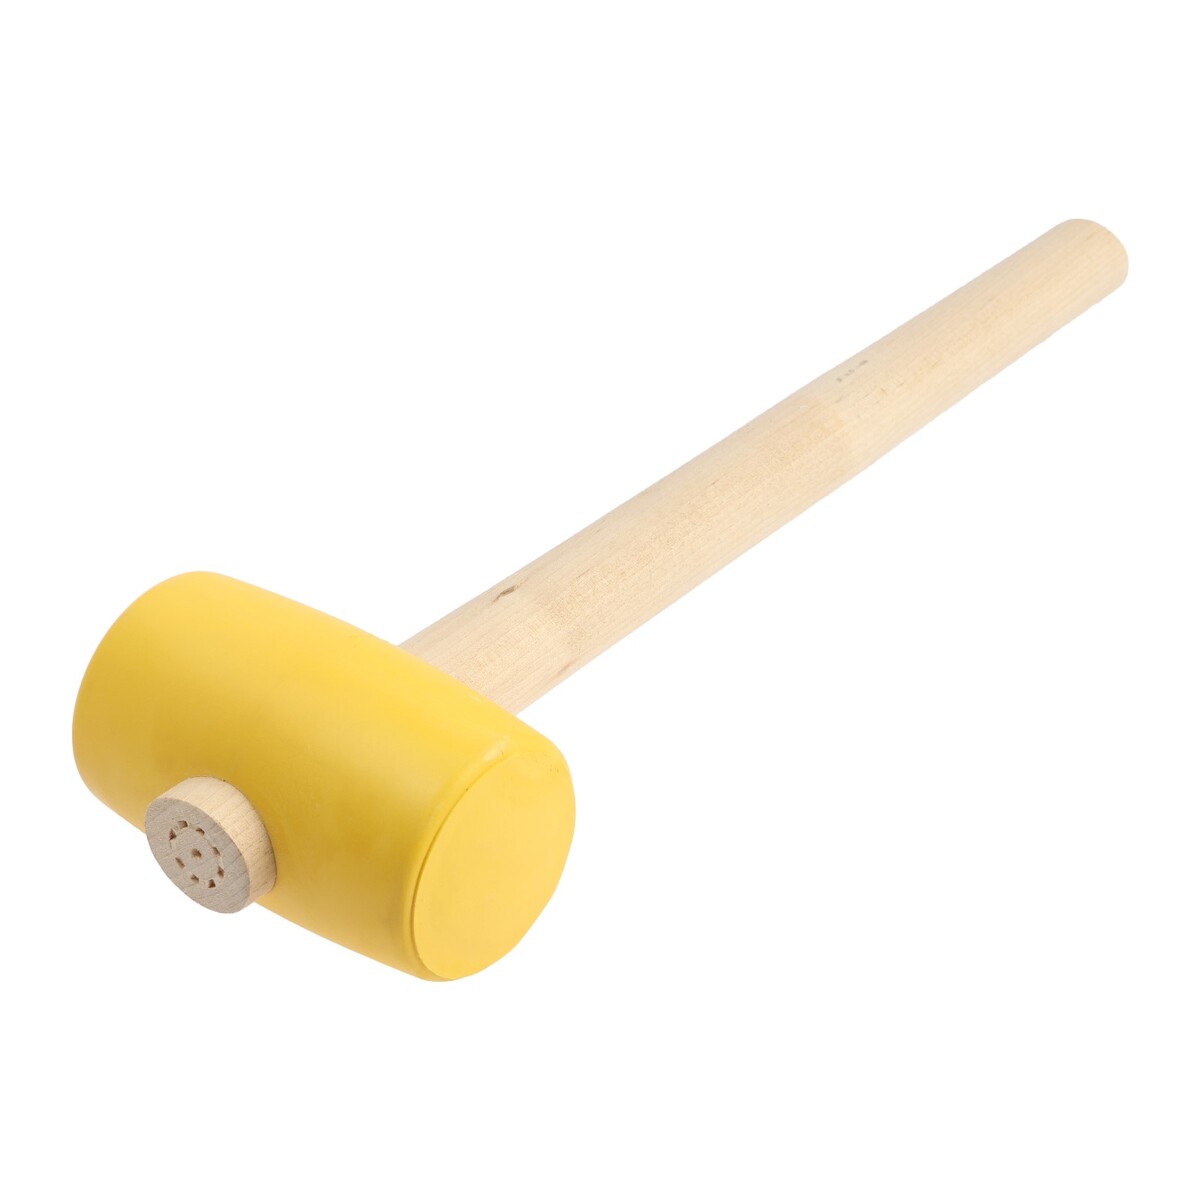 Киянка лом, деревянная рукоятка, желтая резина, 55 мм, 400 г киянка резиновая matrix 11195 белая резина фибергласовая рукоятка 225 г